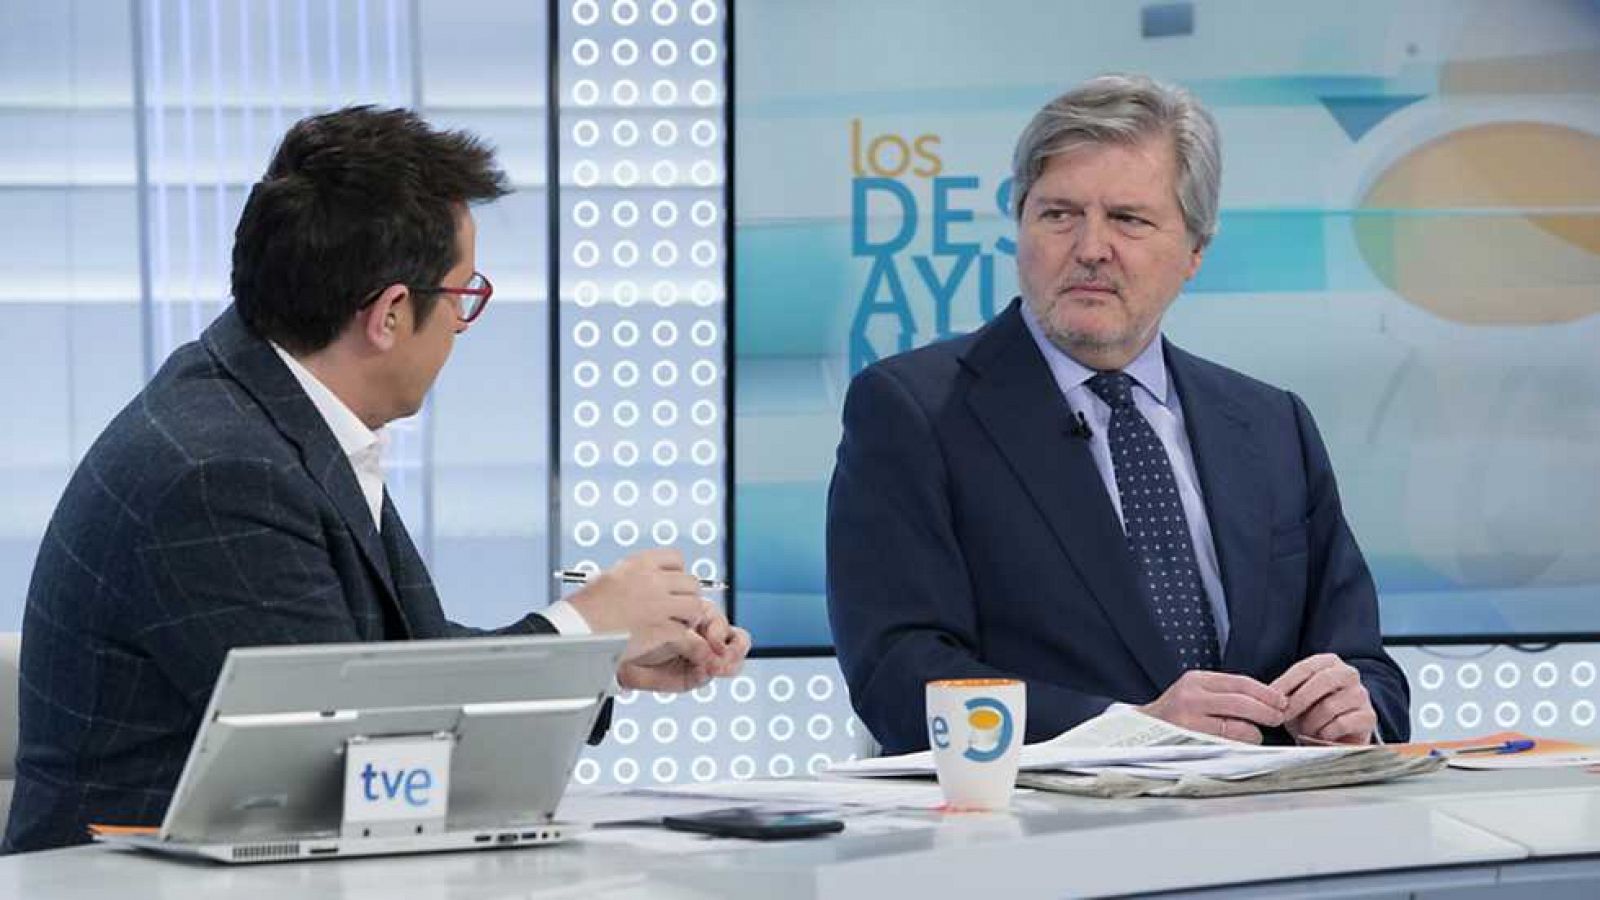 Los desayunos de TVE - Íñigo Méndez de Vigo, ministro de Educación, Cultura y Deportes y portavoz del Gobierno